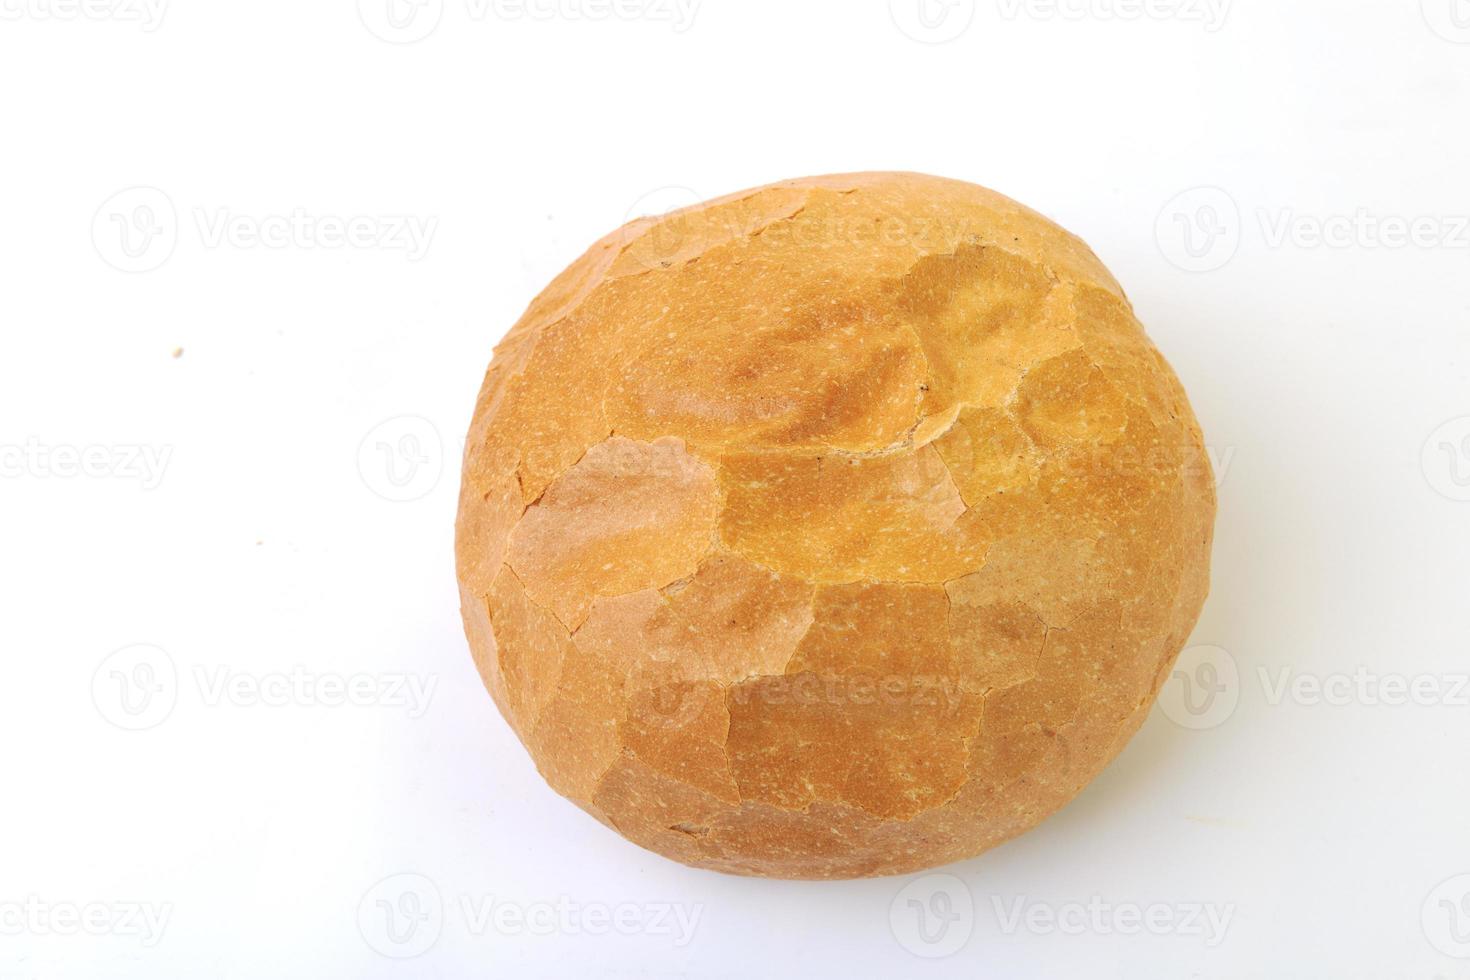 brood voedsel geïsoleerd foto